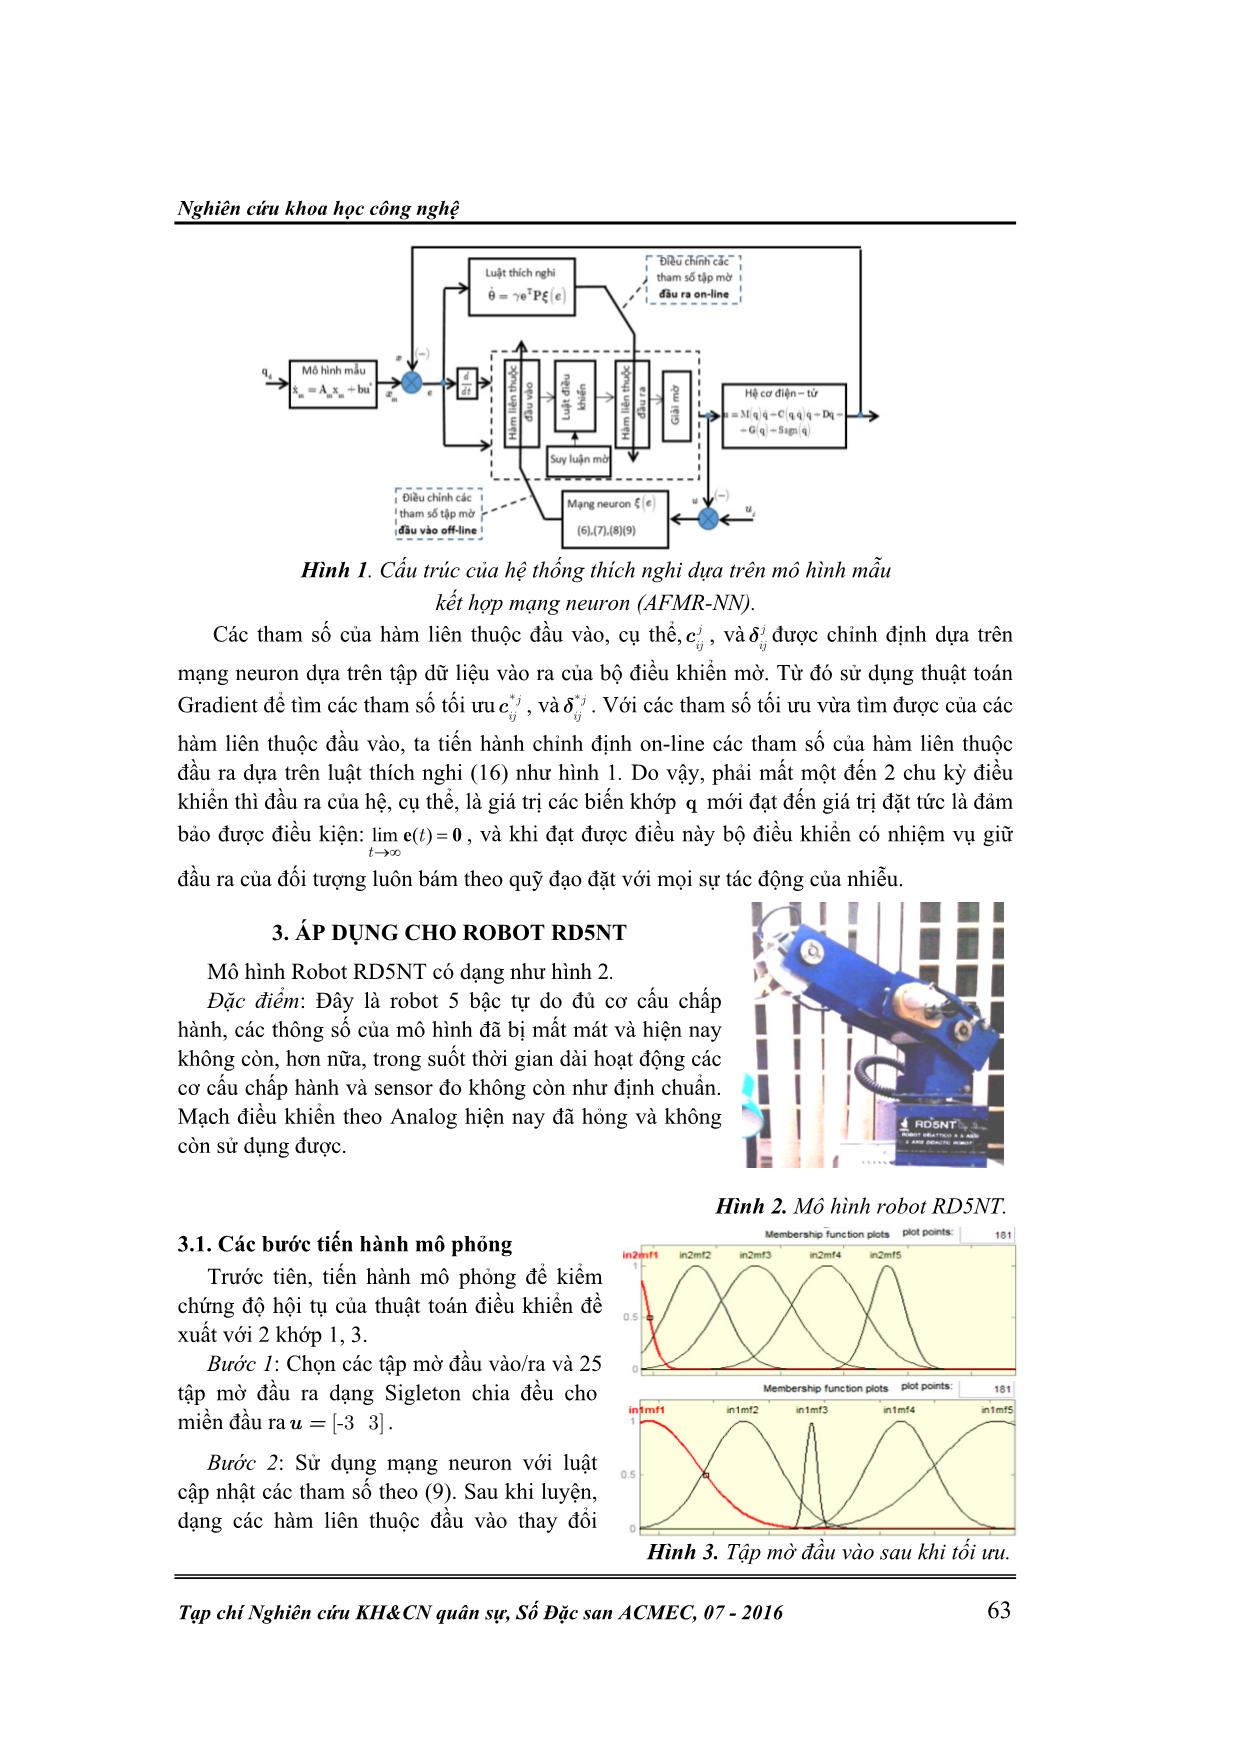 Thiết kế bộ điều khiển mờ thích nghi theo mô hình mẫu và mạng neuron cho các hệ cơ điện tử trang 4